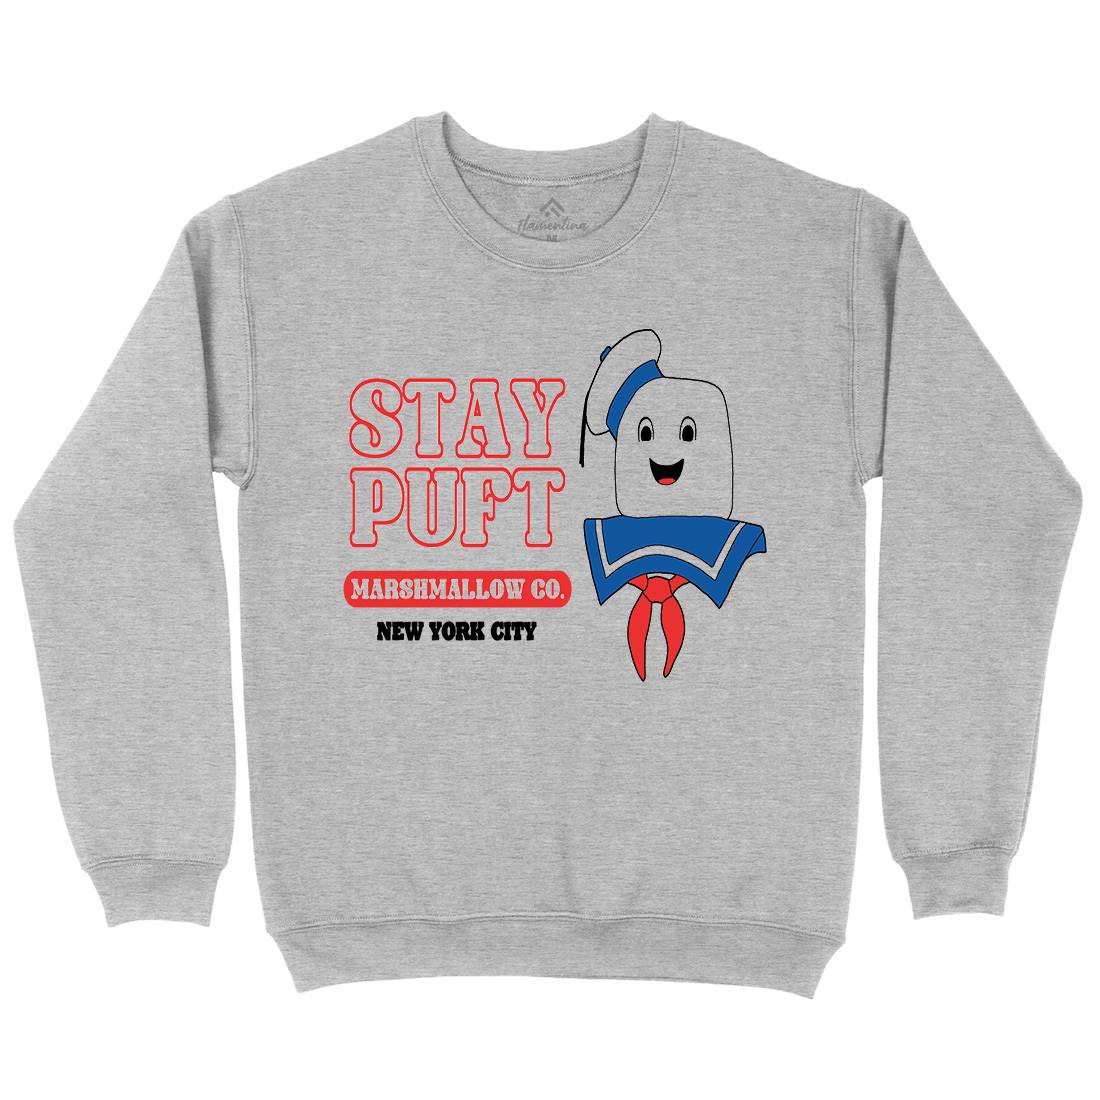 Stay Puft Co Kids Crew Neck Sweatshirt Space D141